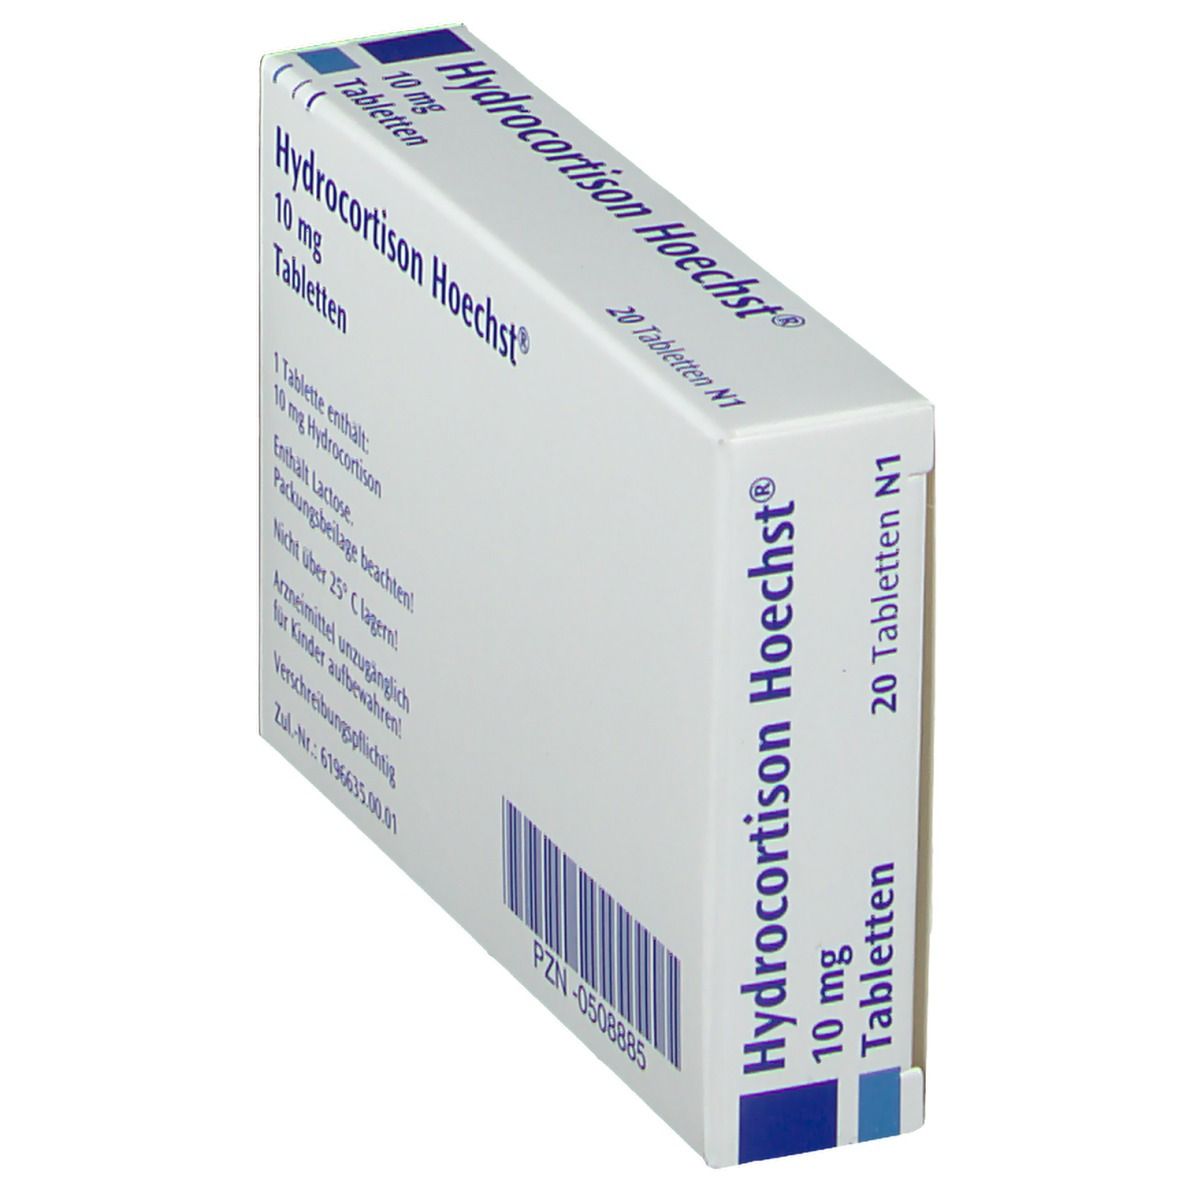 Hydrocortison Hoechst® 10 mg